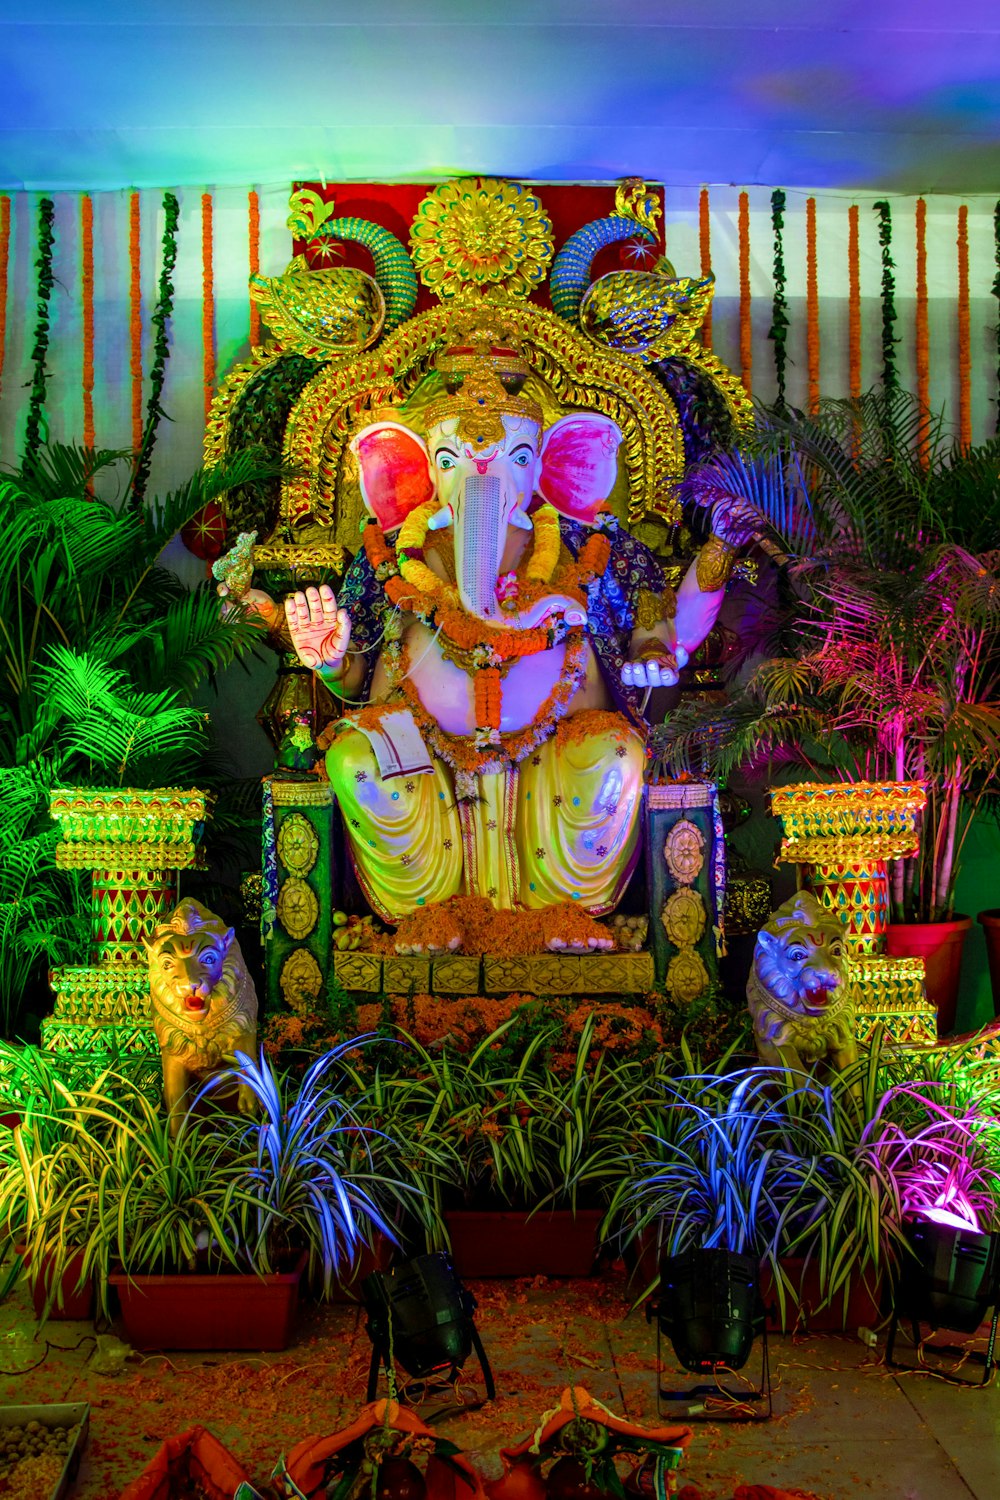 Statue de divinité hindoue entourée de plantes vertes